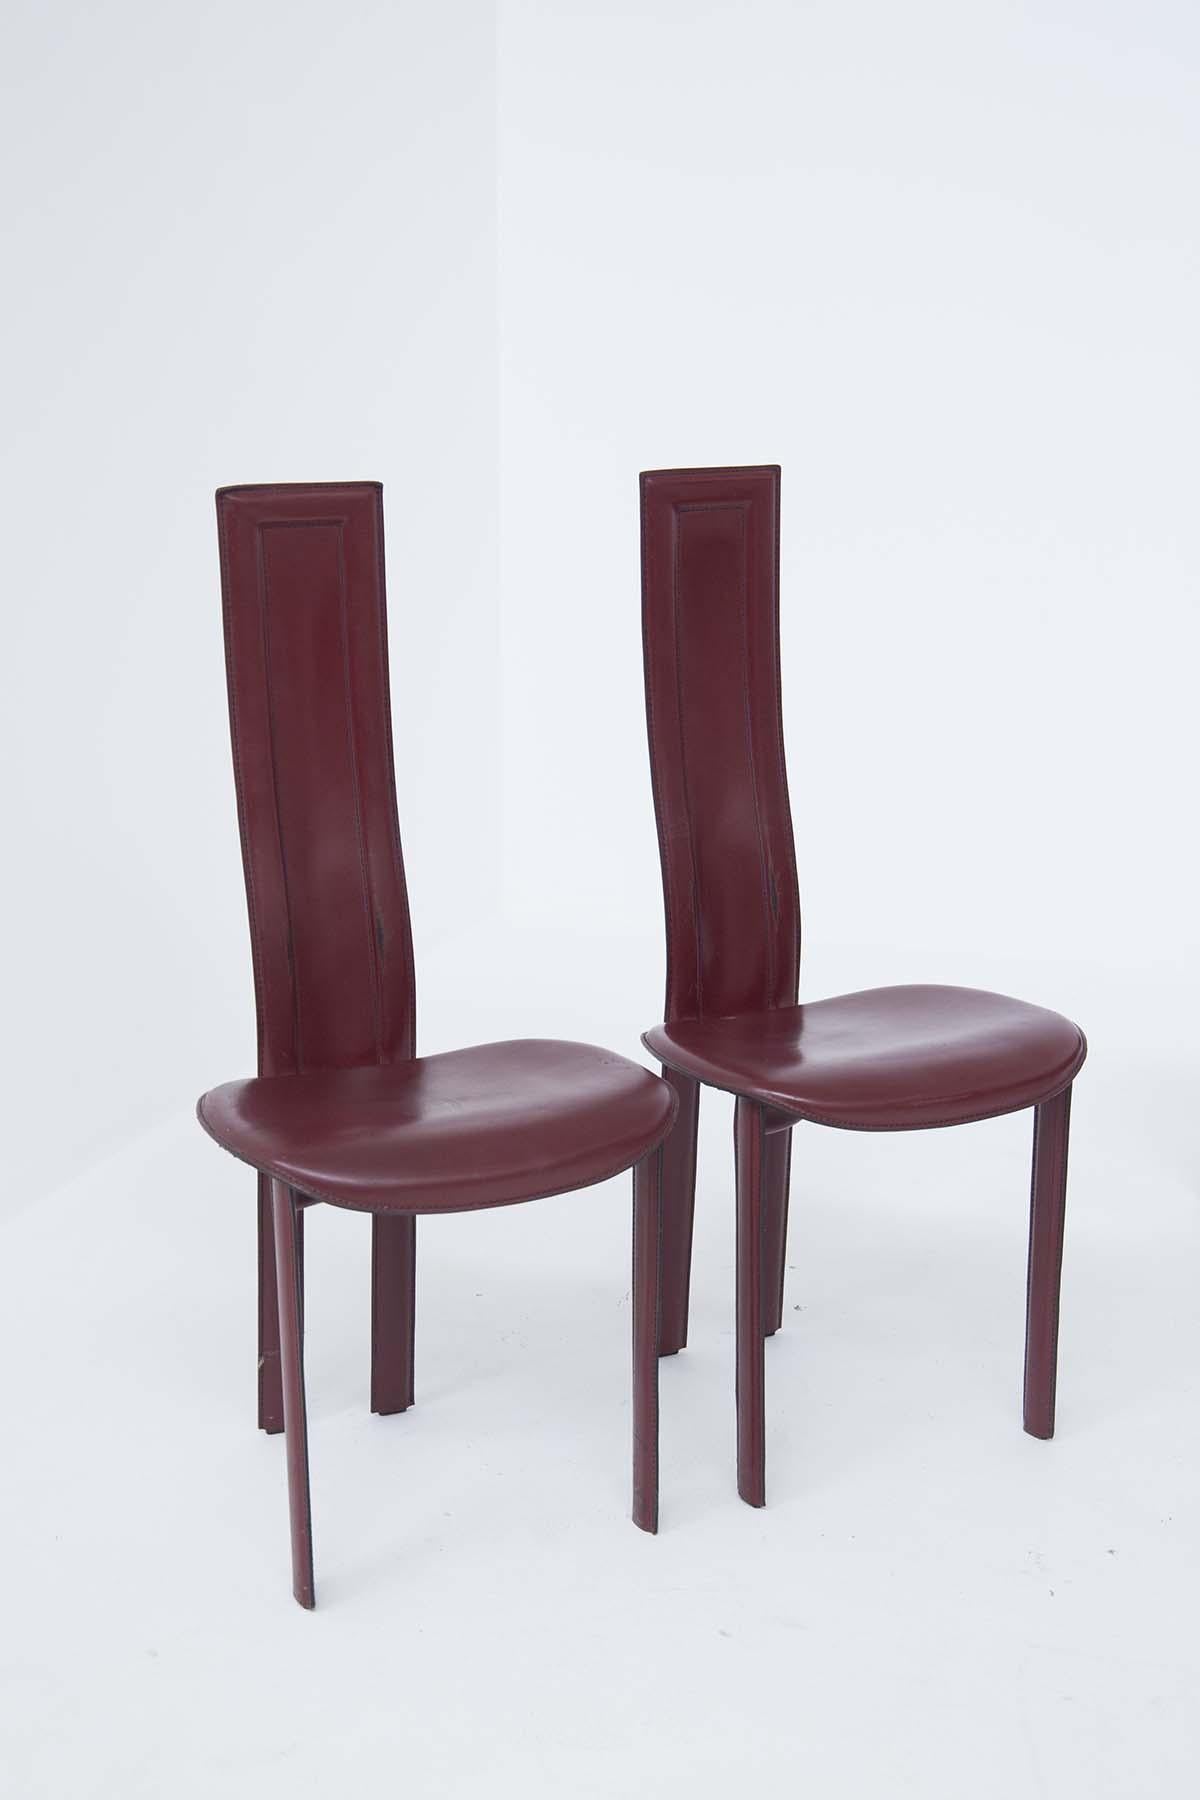 Lot de 6 chaises de table en cuir bordeaux avec surpiqûres apparentes, quatre sont pour le côté de la table, deux sont les chaises de tête, avec un dossier plus haut et plus long, leur assise est arrondie.
Tous les fauteuils en cuir vintage ont